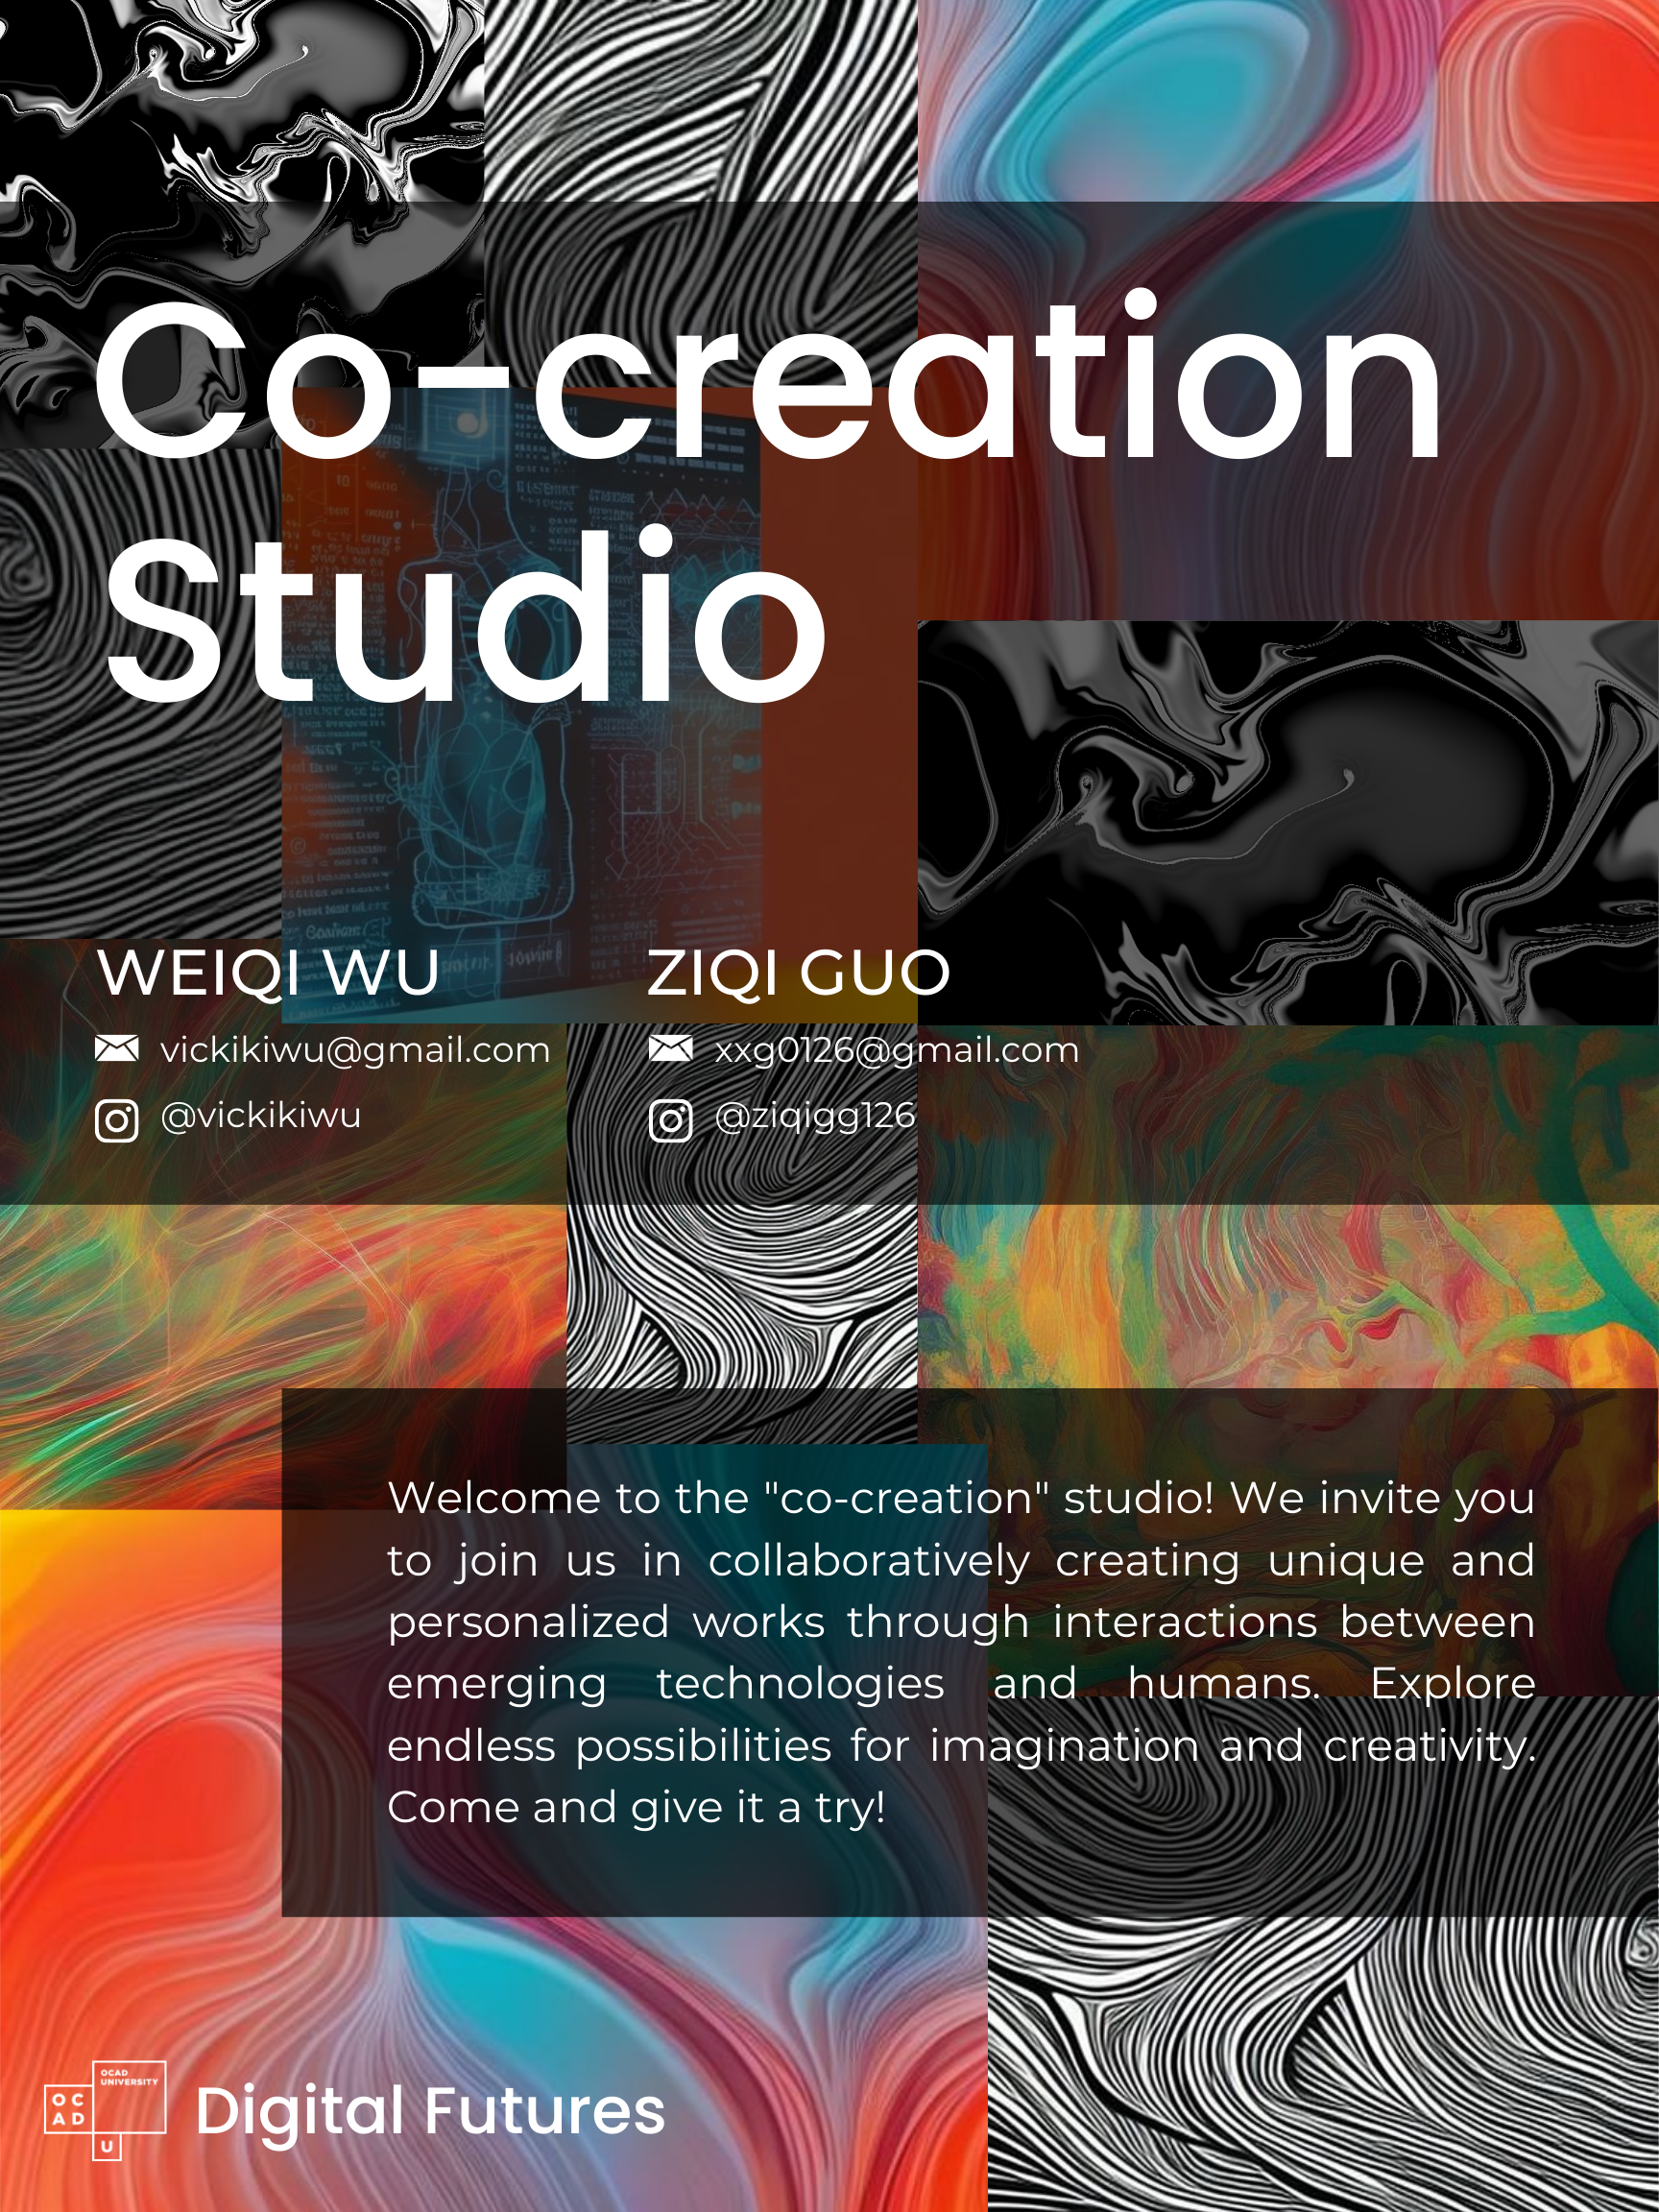 Co-Creation Studio